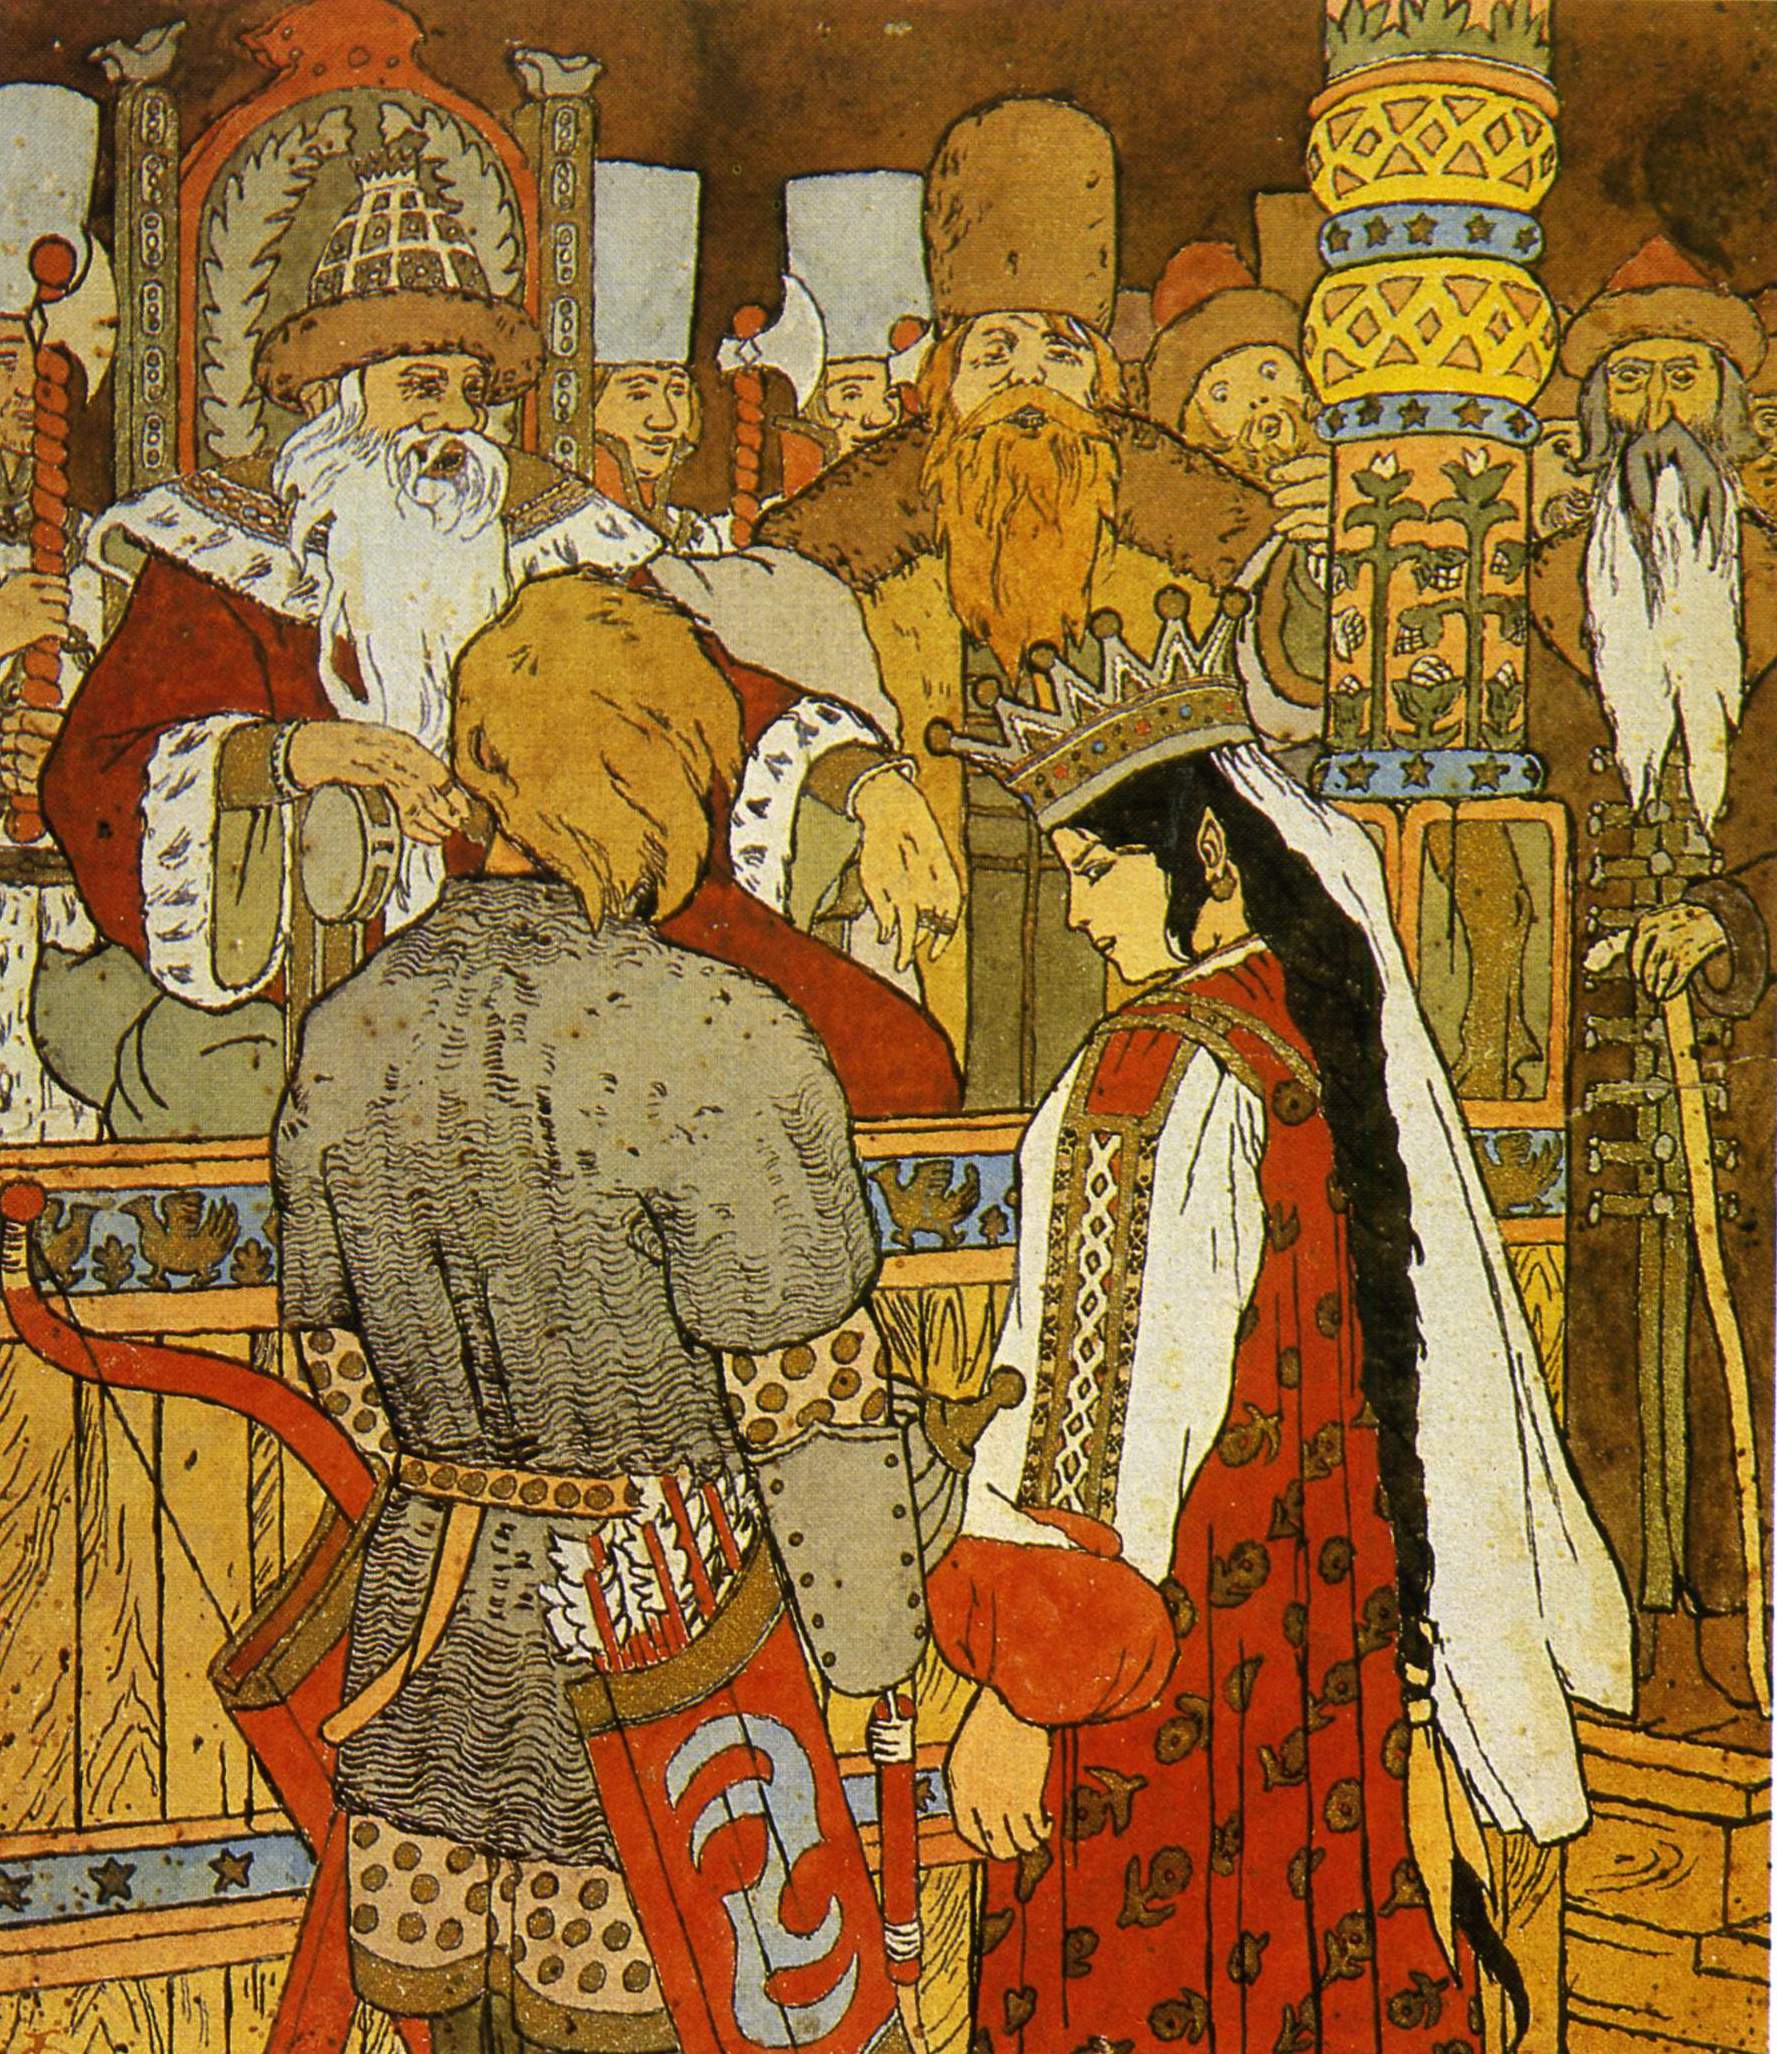 Билибин. Иллюстрация к сказке «Иван-царевич и Серый волк». 1899